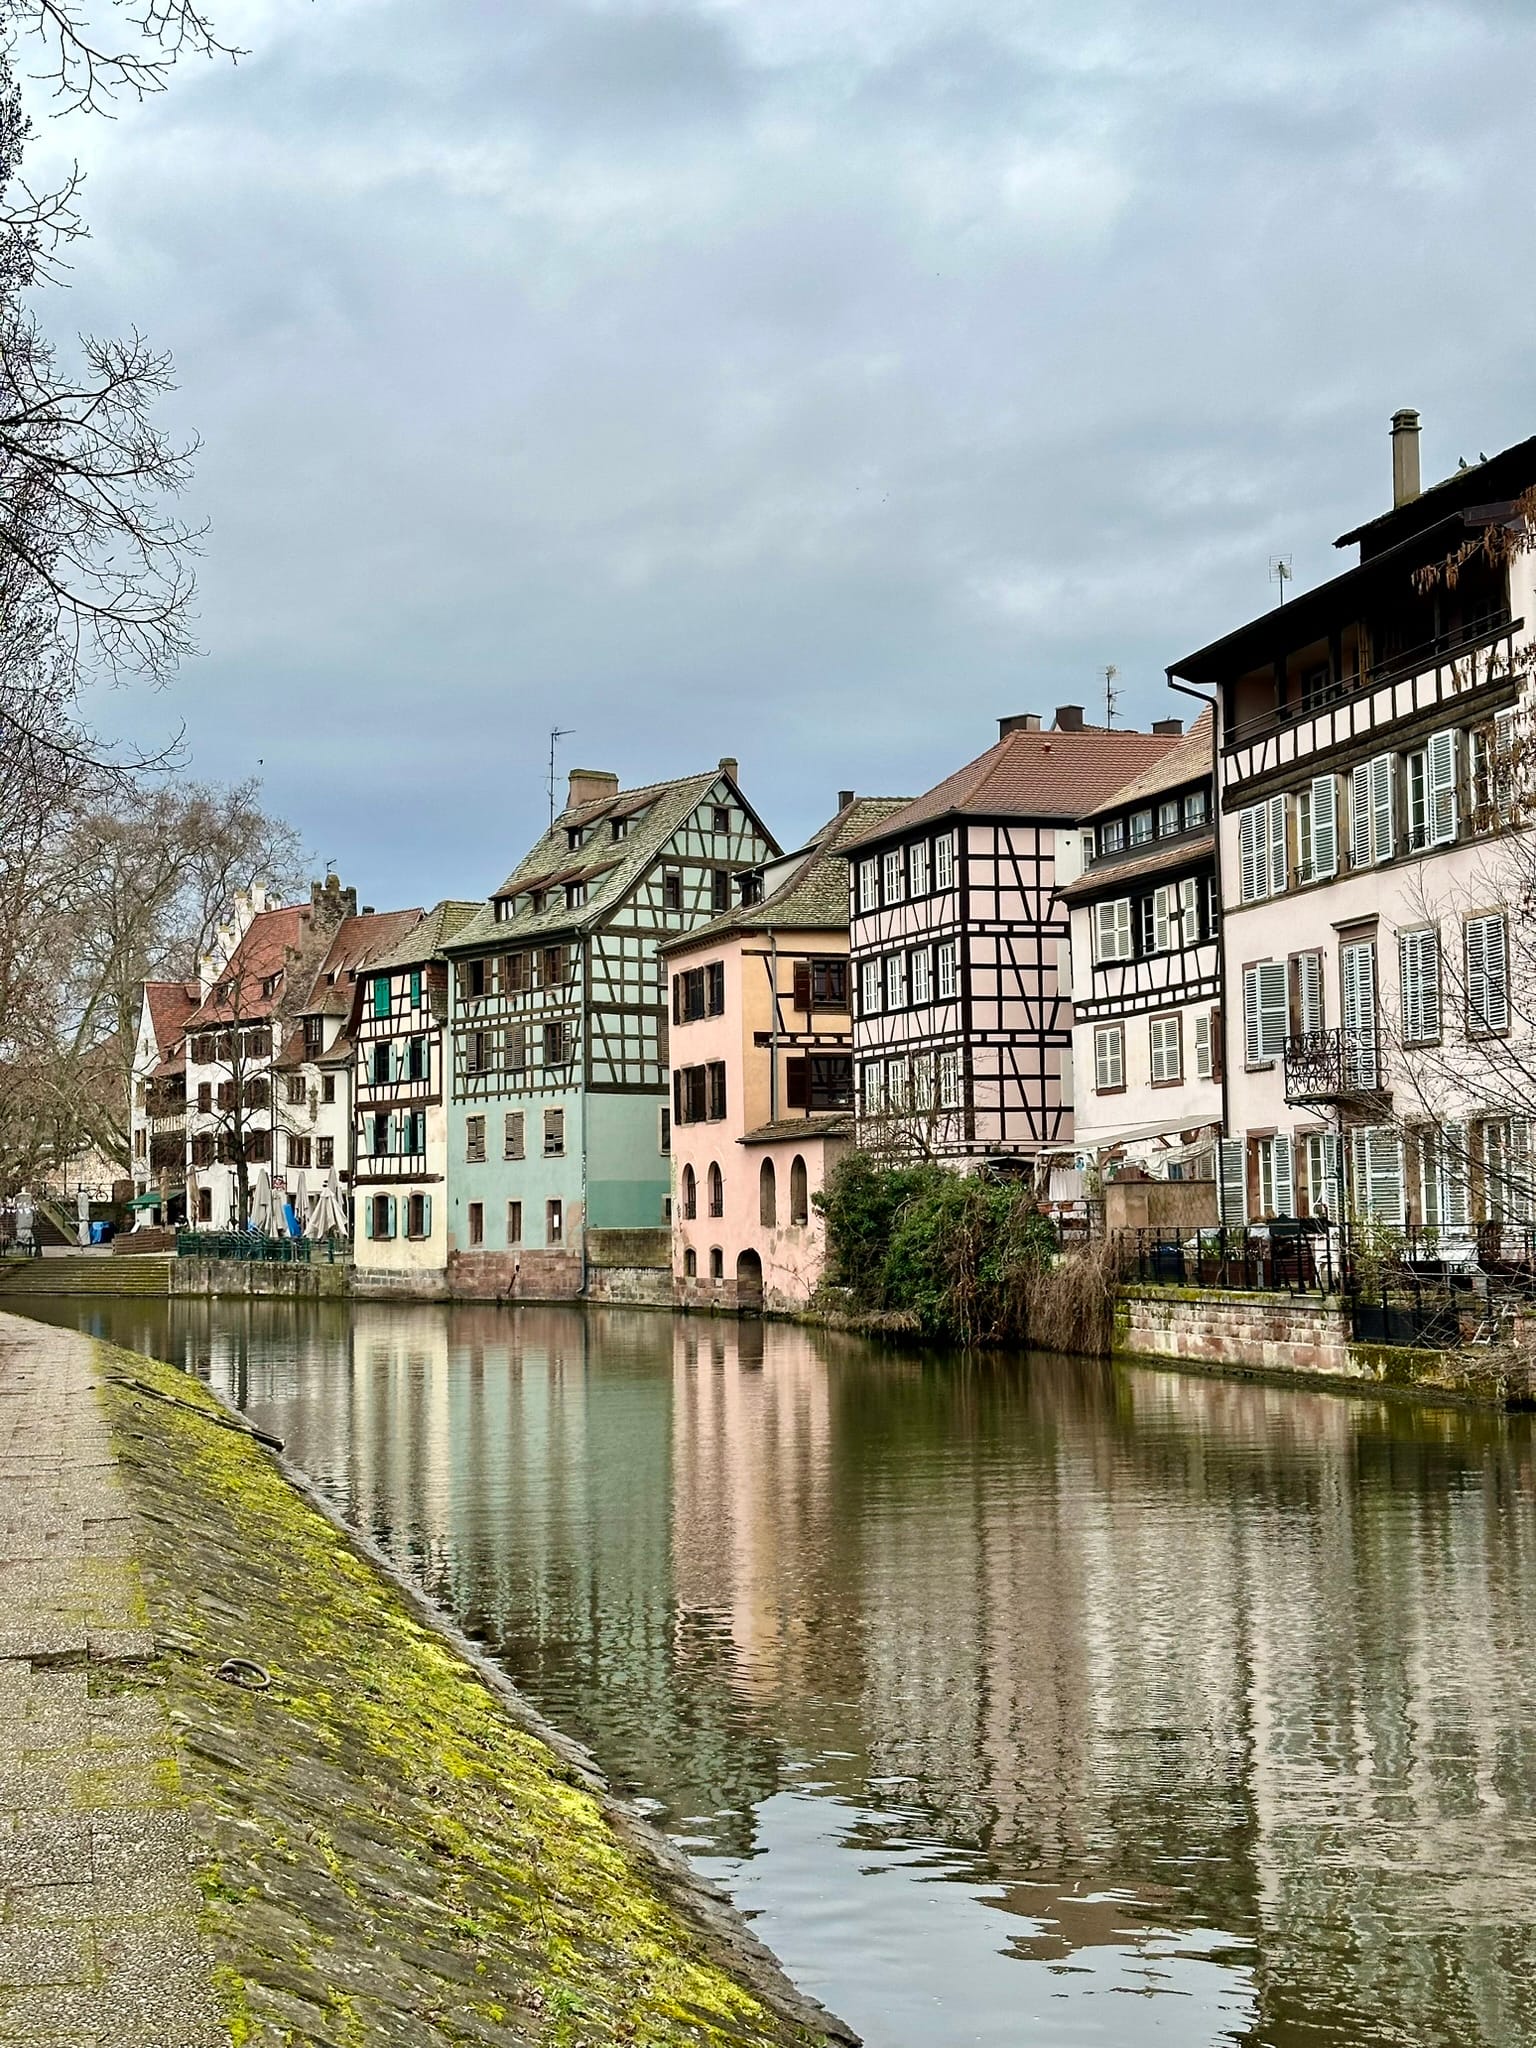 Itinerar 3 zile de poveste în Alsacia, Franța! Ce să vizitezi